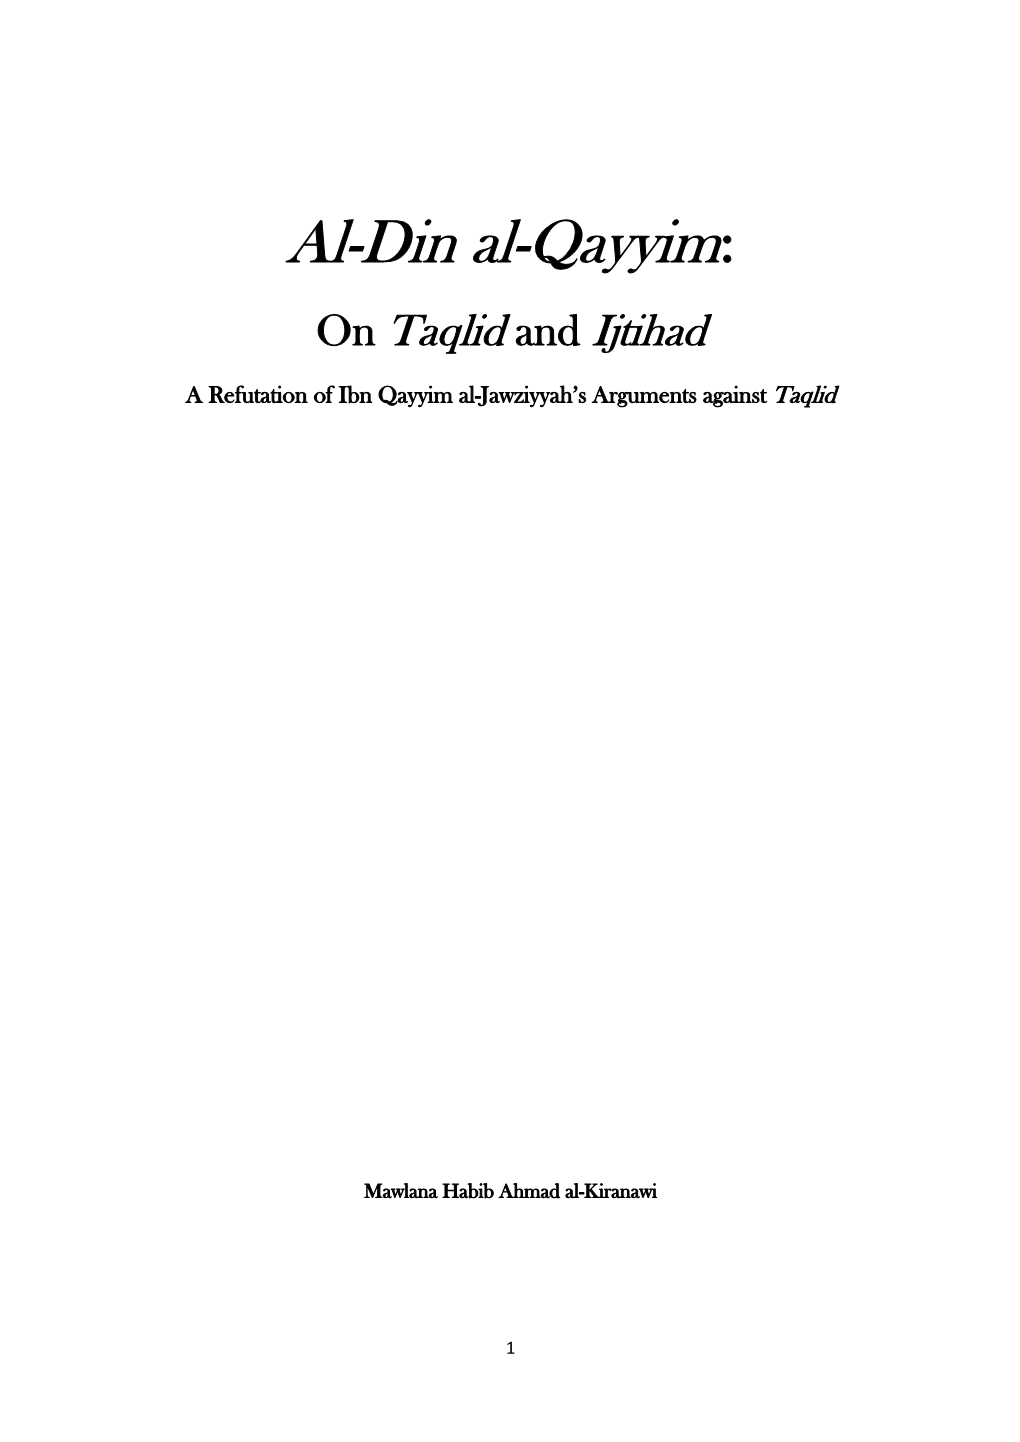 Al-Din Al-Qayyim: on Taqlid and Ijtihad